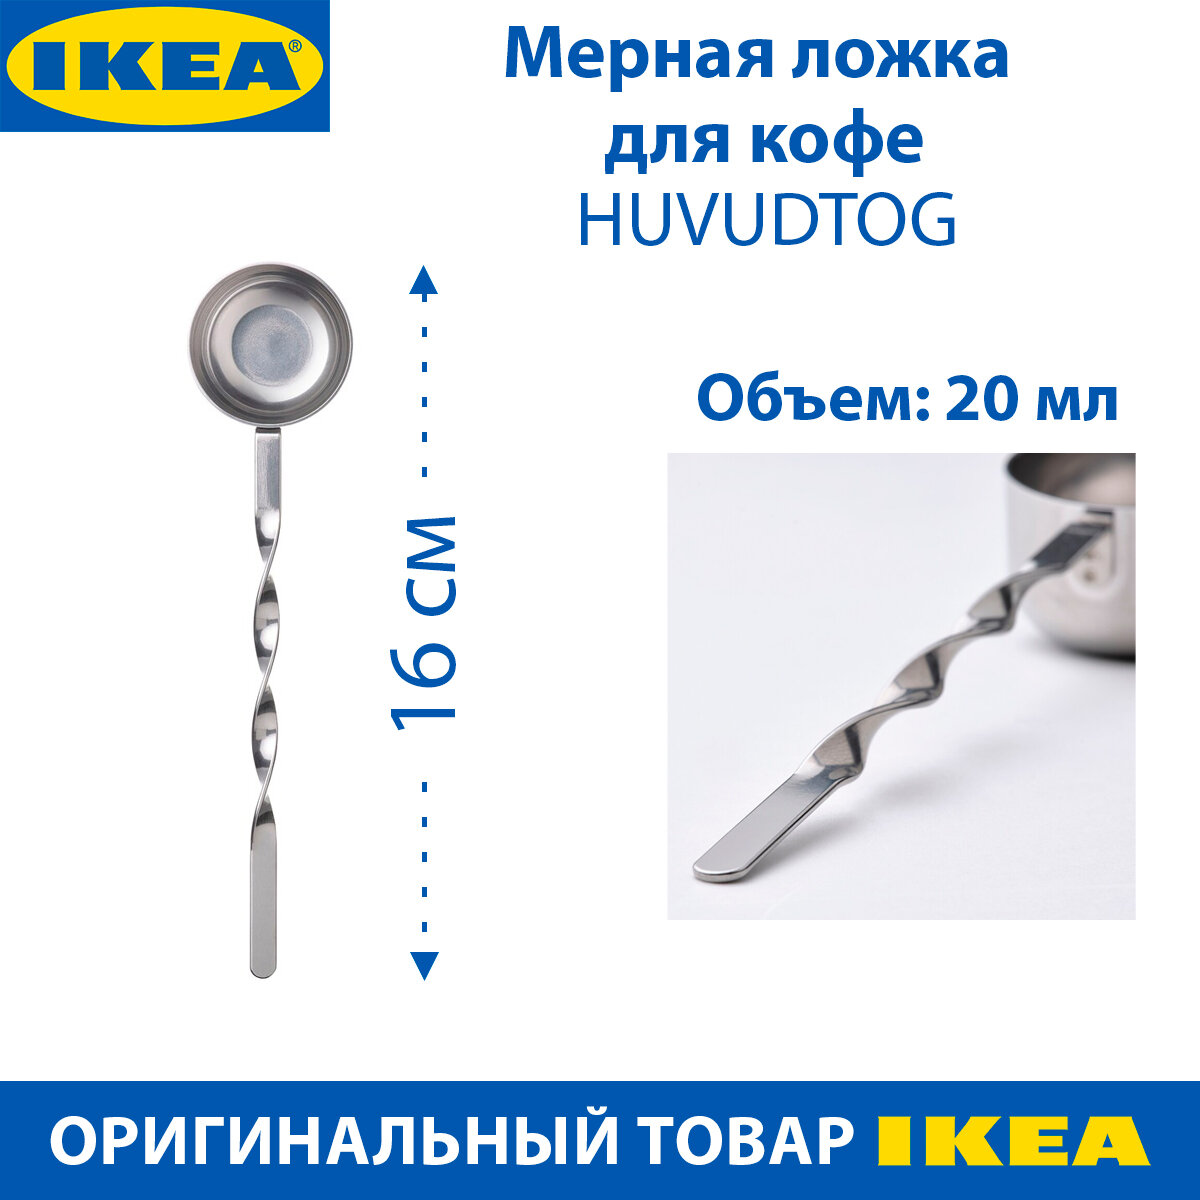 Мерная ложка для кофе IKEA HUVUDTOG (хувудтог), из нержавеющей стали, 1 шт